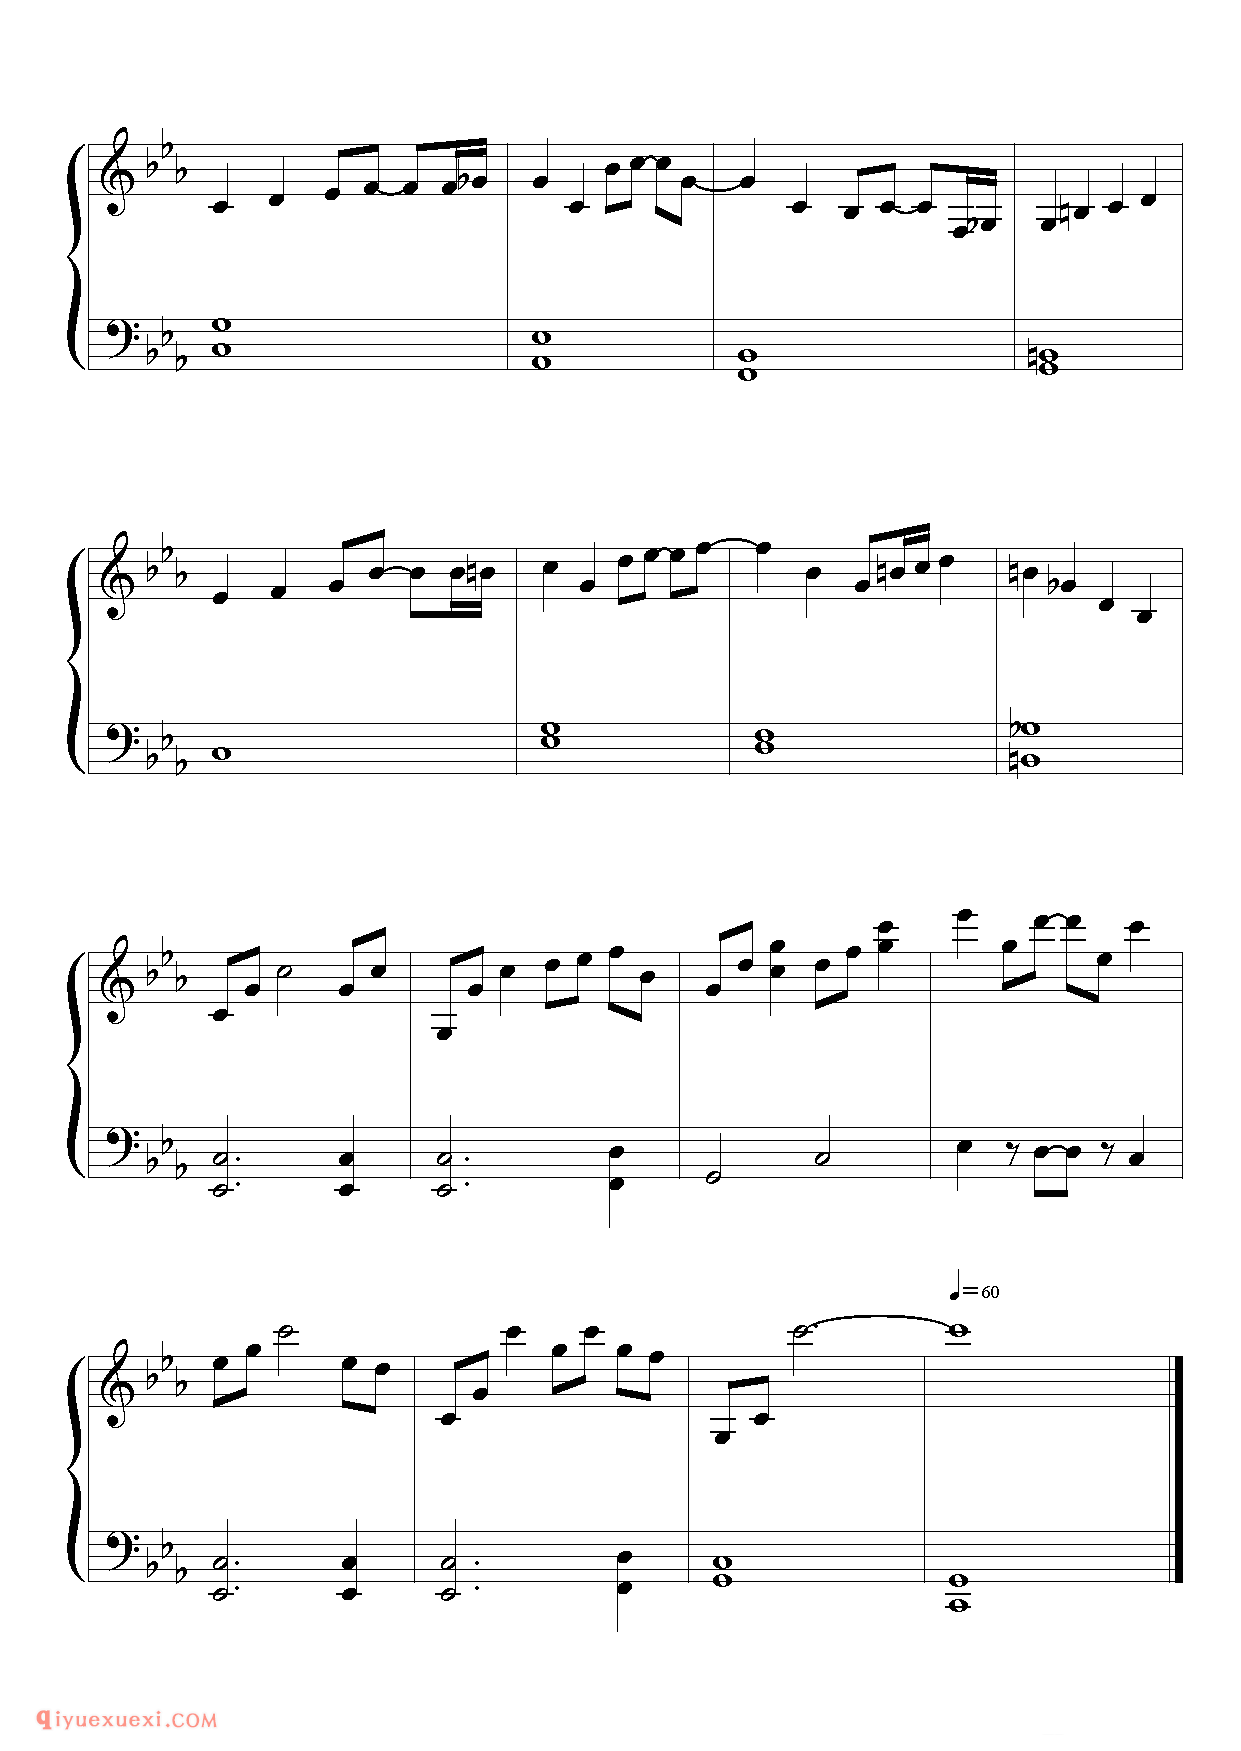 [東方ピアノEasyモード楽譜][easy][4]二つの世界_东方(project)钢琴谱